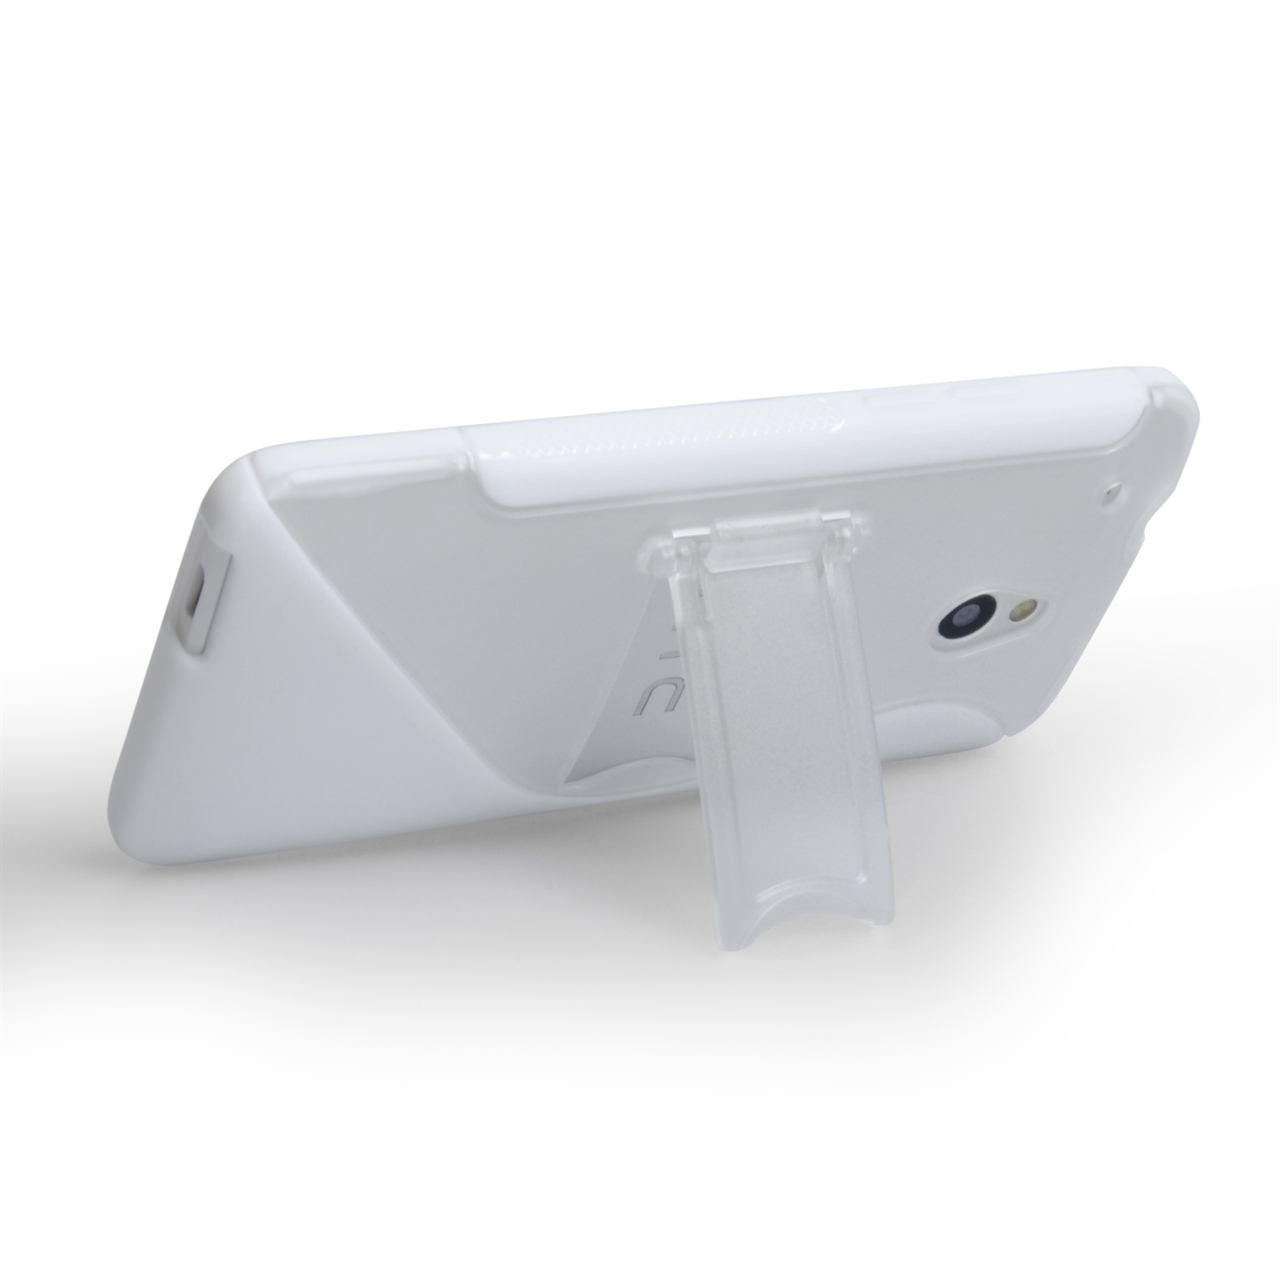 Caseflex HTC One Mini Gel Stand Case - White